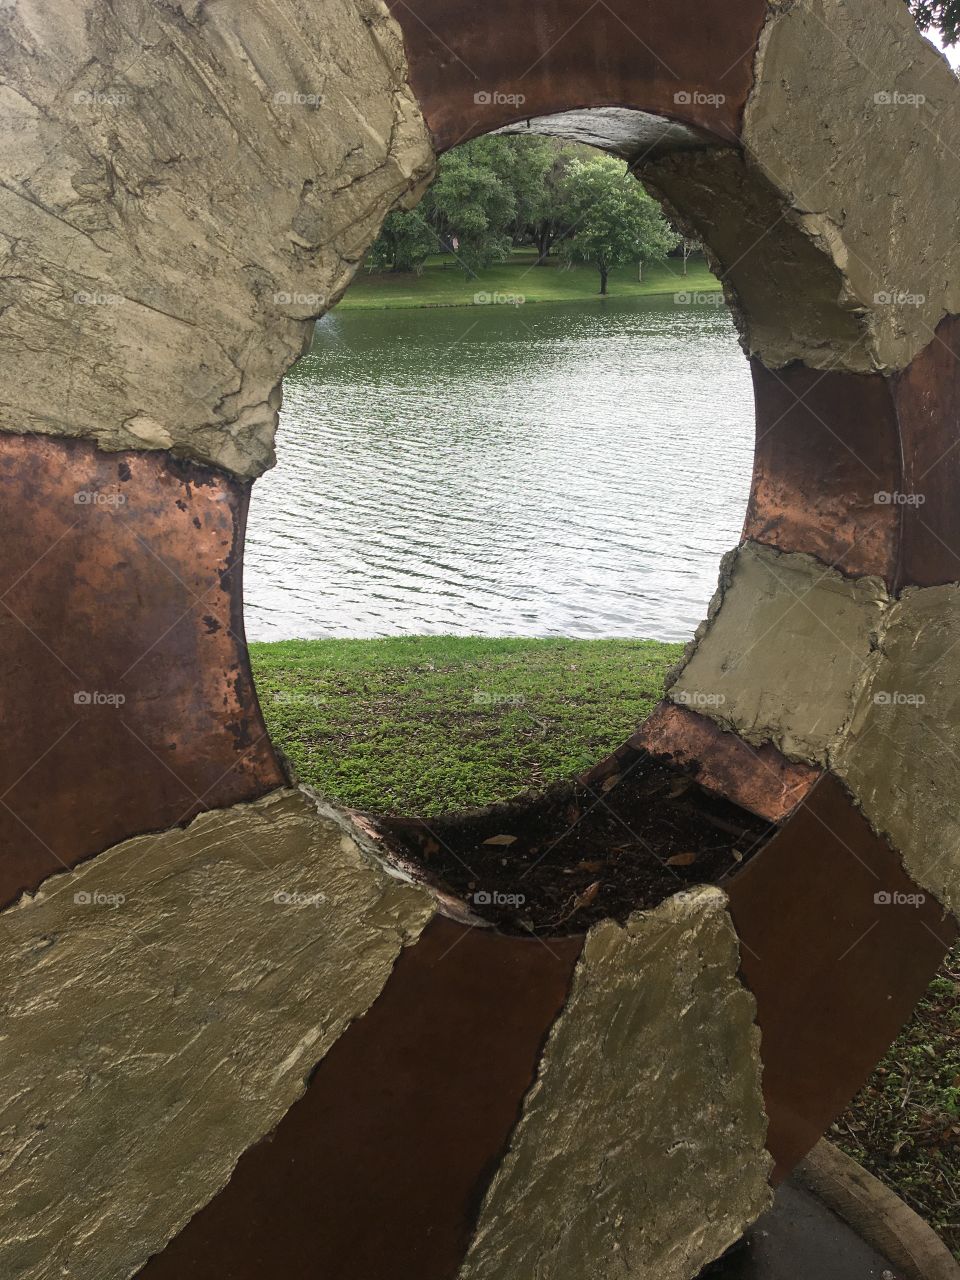 Pond through a sculpture 